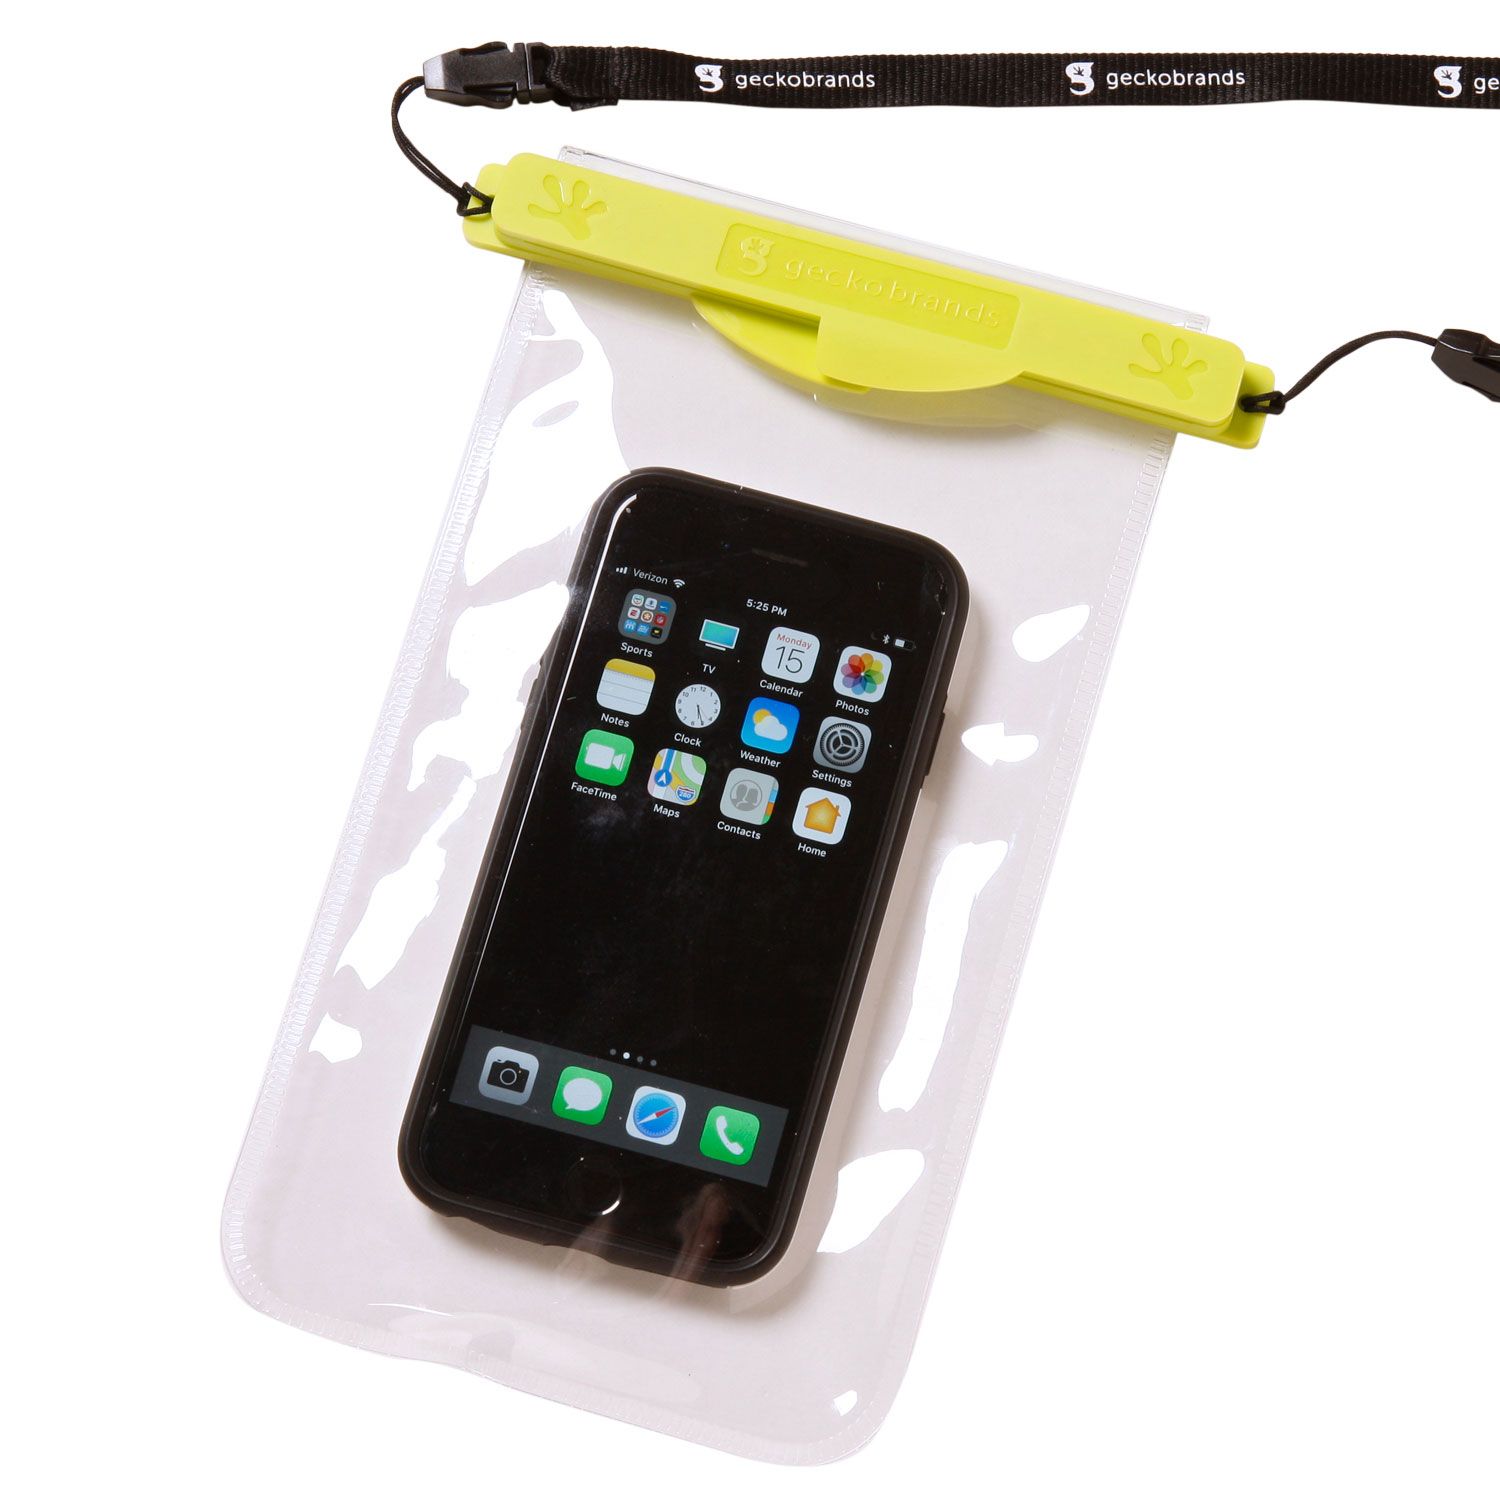 waterproof phone bag